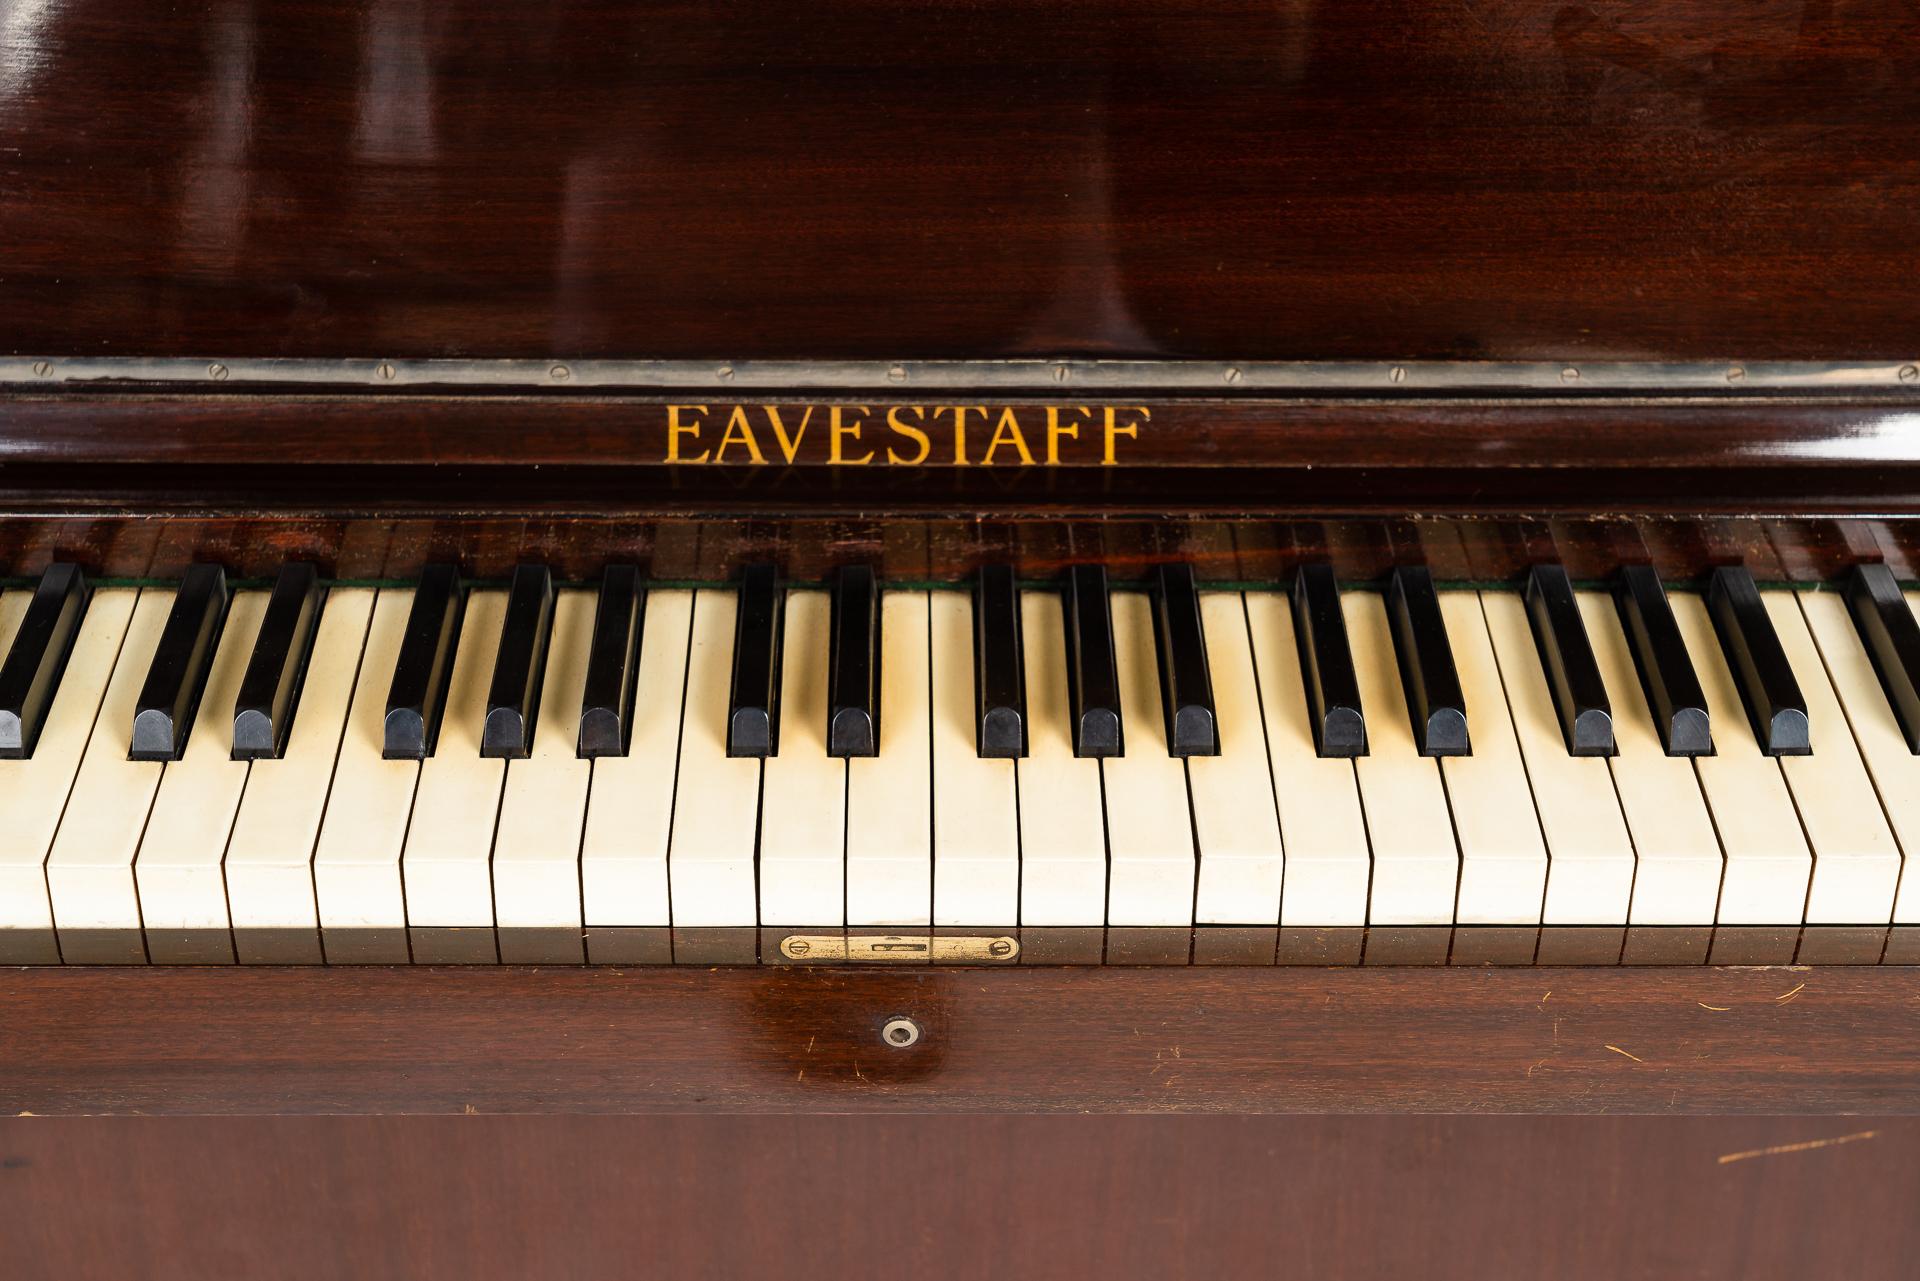 eavestaff mini piano for sale